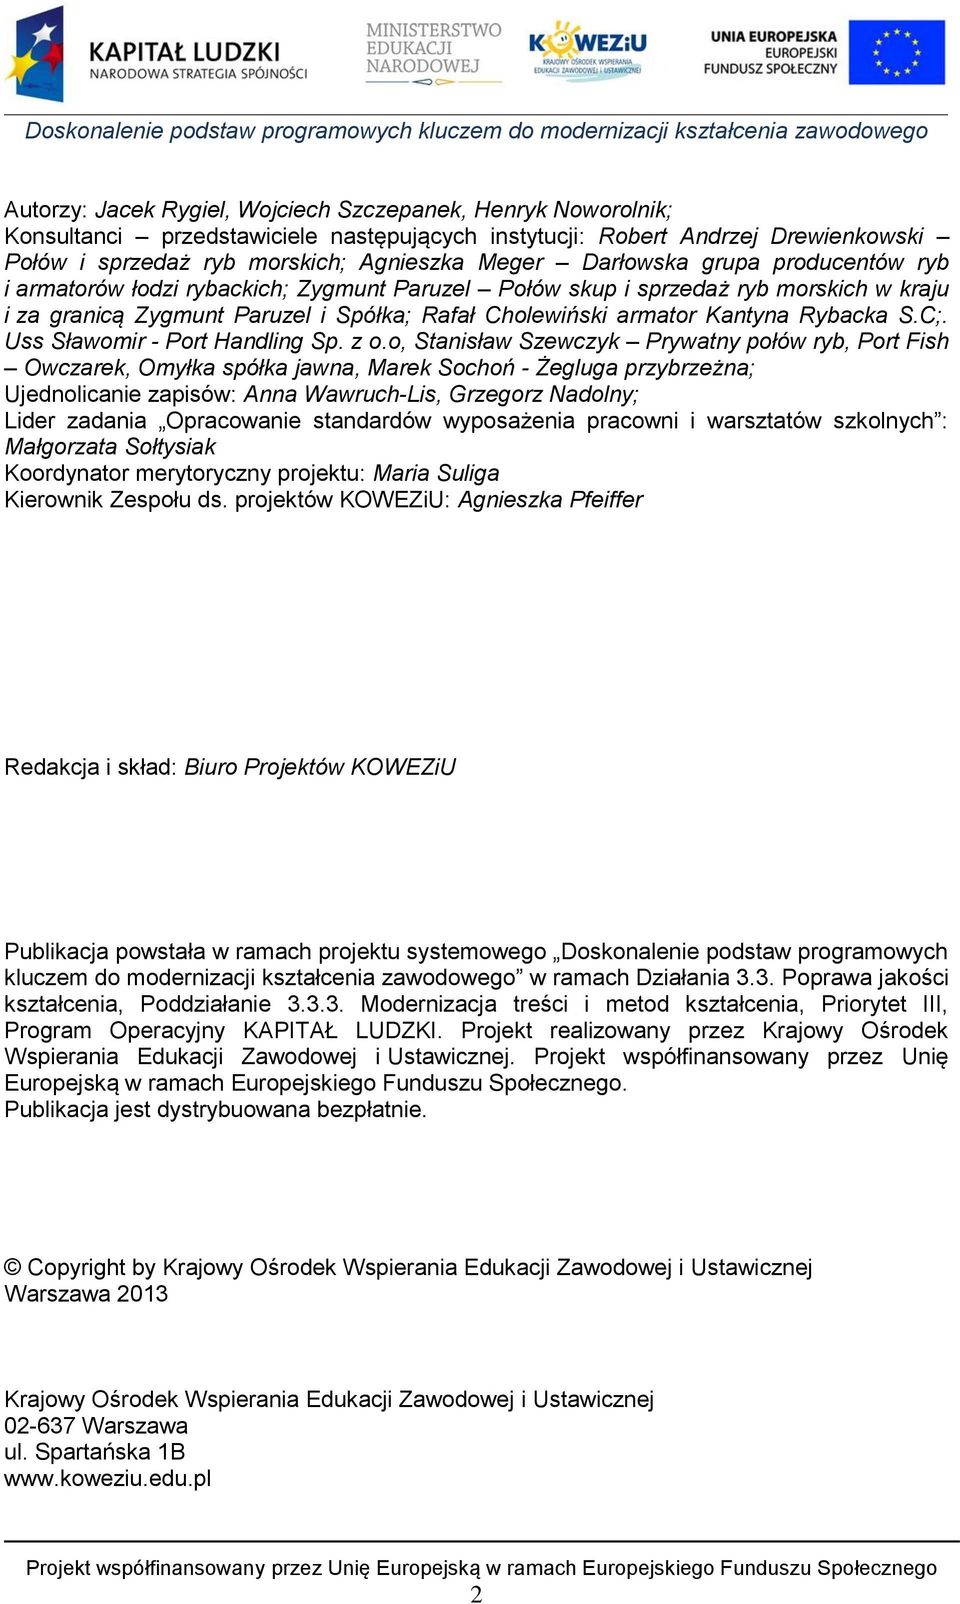 Rybacka S.C;. Uss Sławomir - Port Handling Sp. z o.